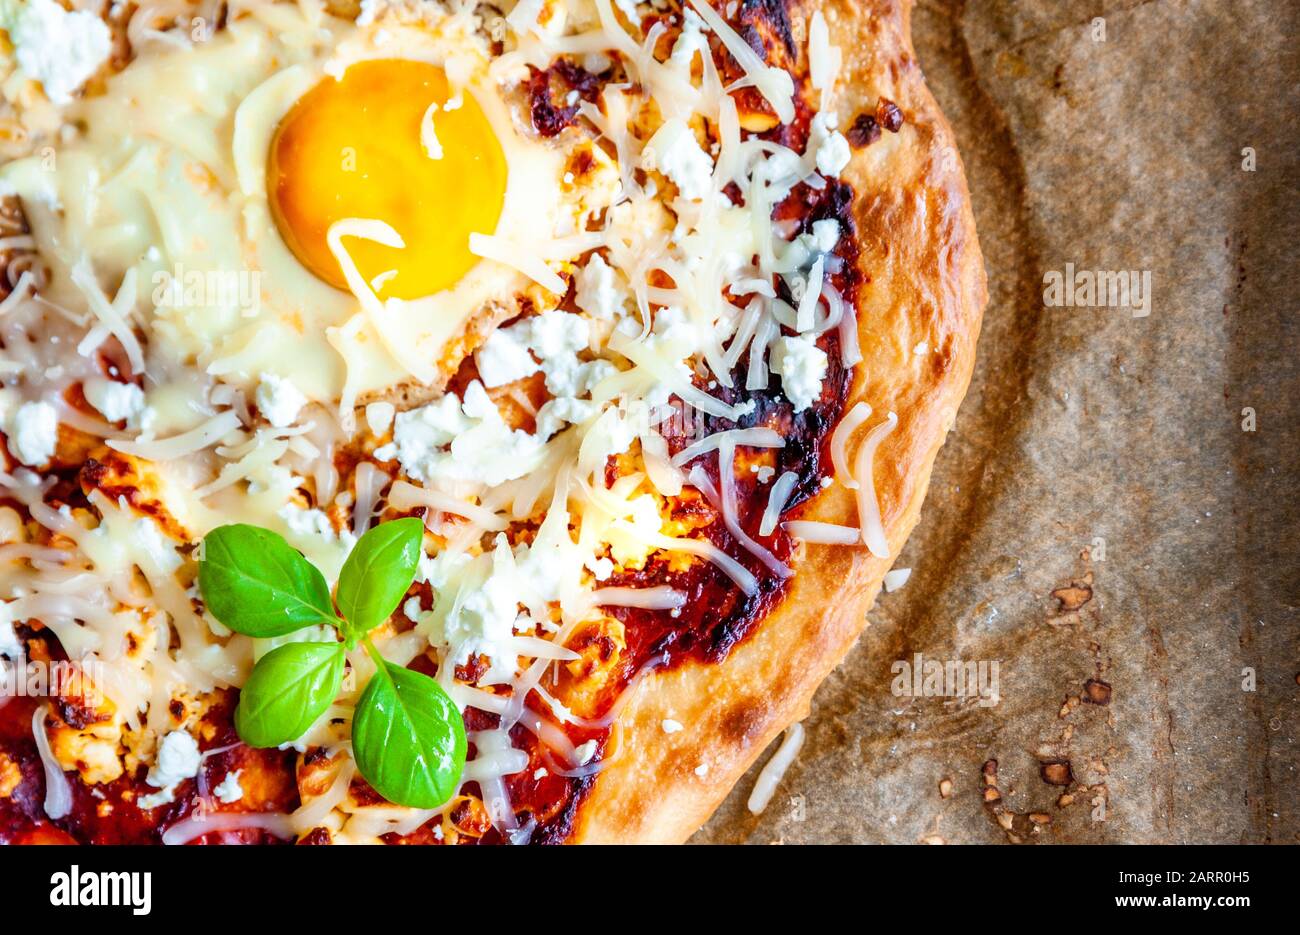 Detalle de una pizza con huevo, queso y hierbas. Escena rústica y luz dramática. Foto de stock